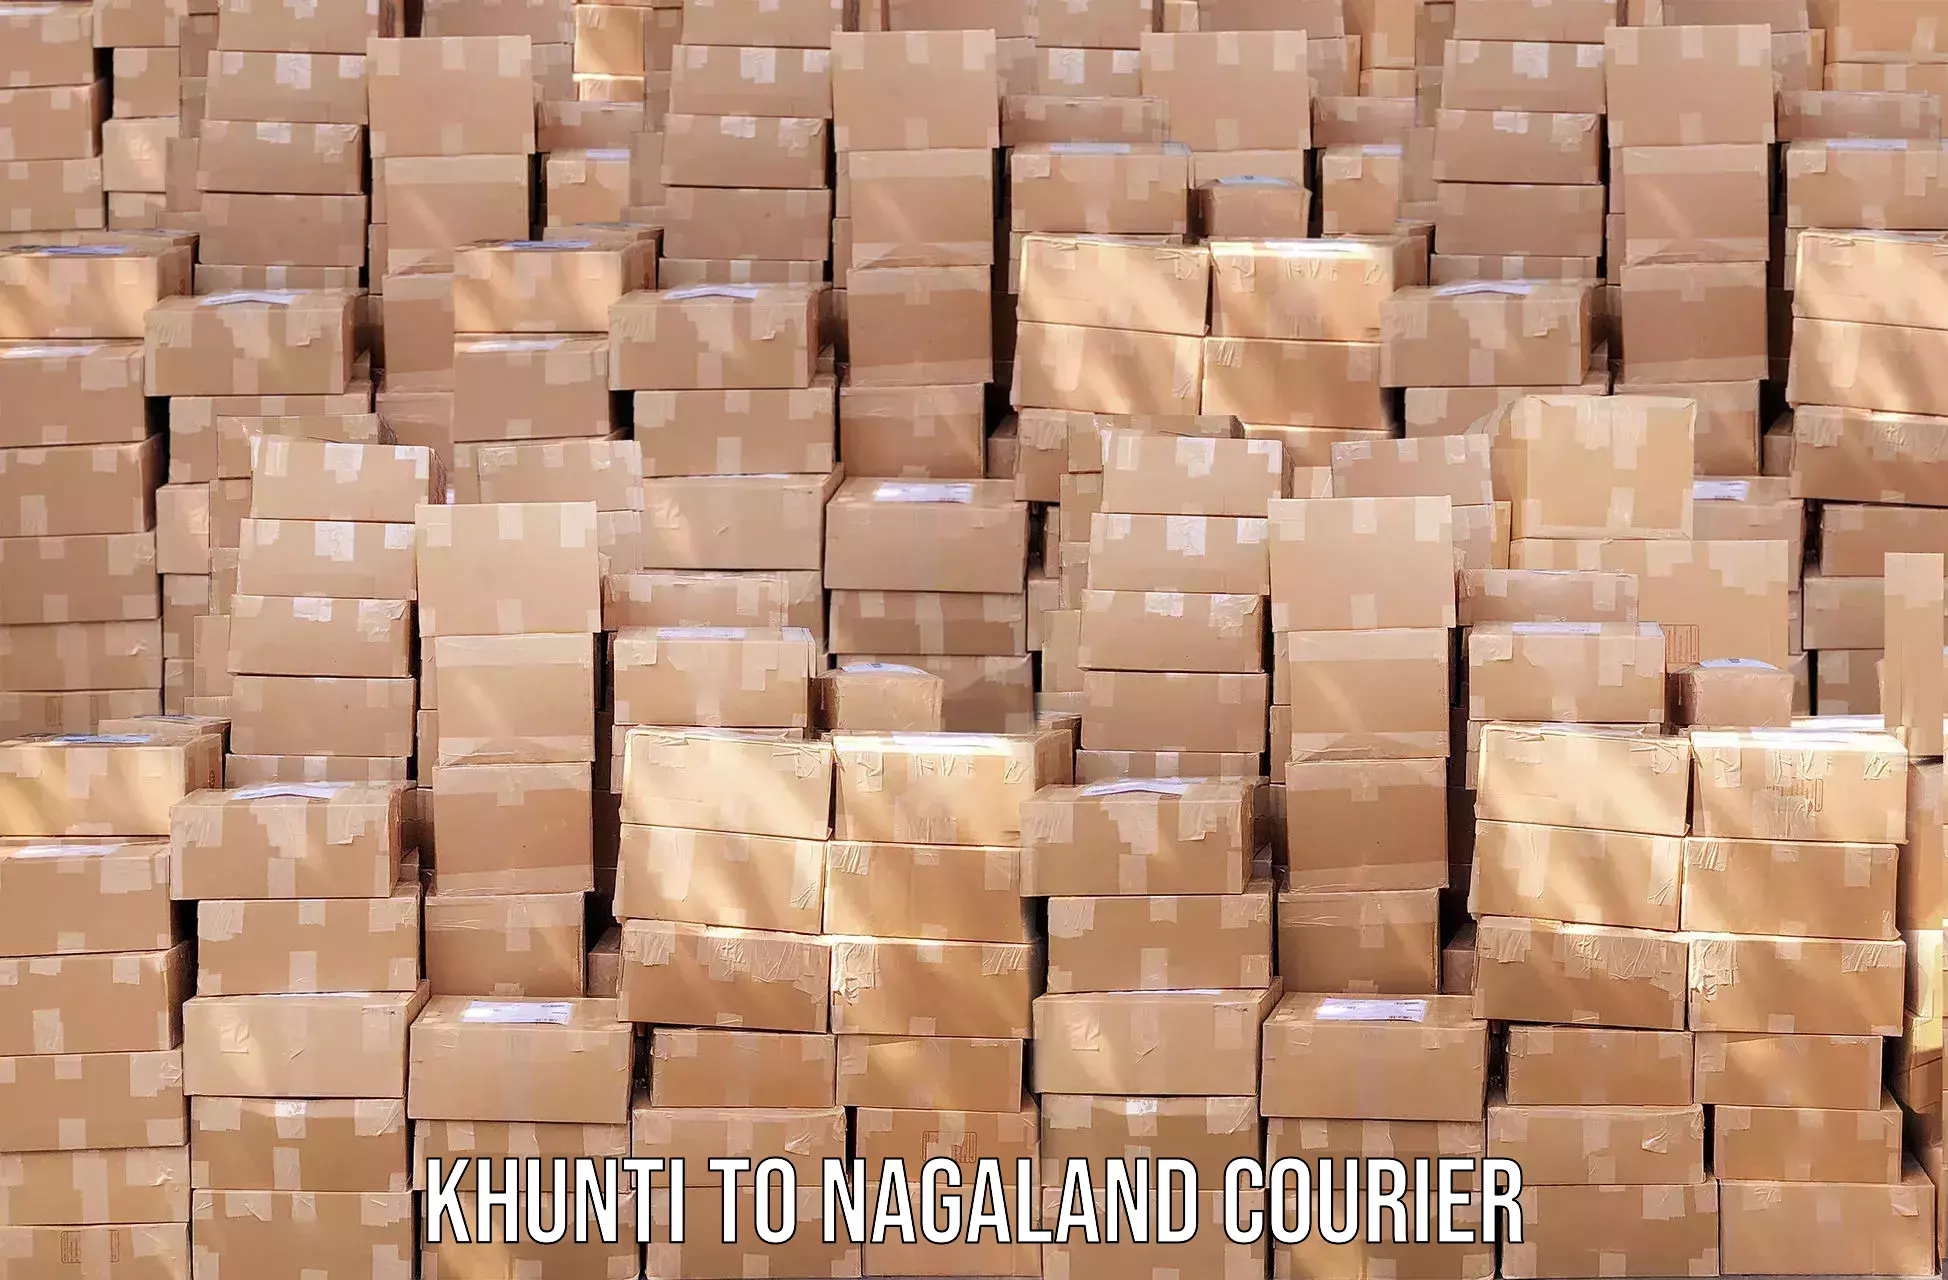 Individual parcel service Khunti to Nagaland